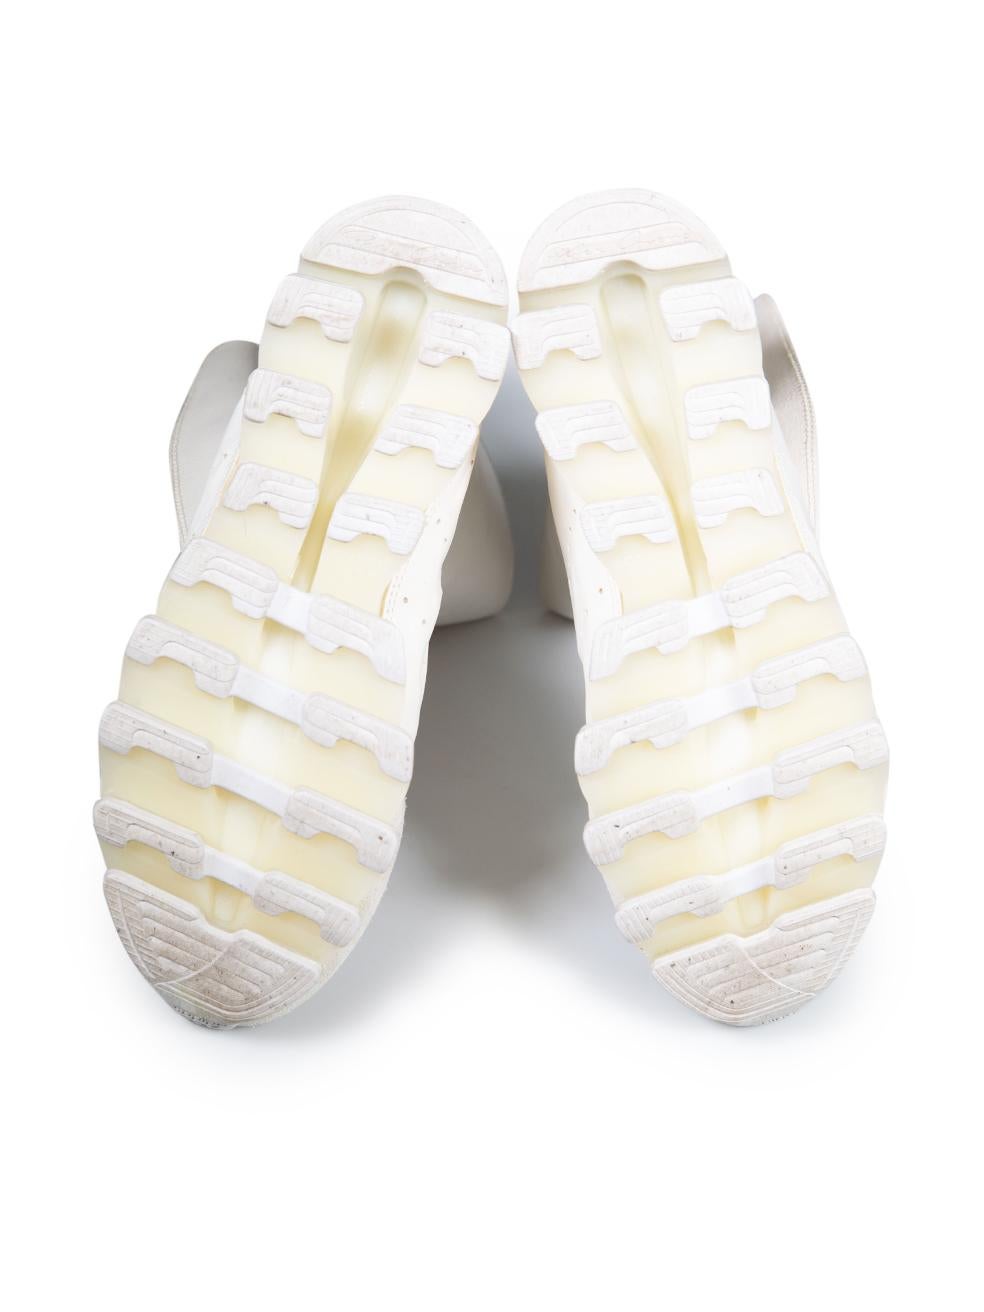 Rick Owens Adidas x Rick Owens - Bottes Springblade en cuir blanc, taille UK 6 Pour femmes en vente